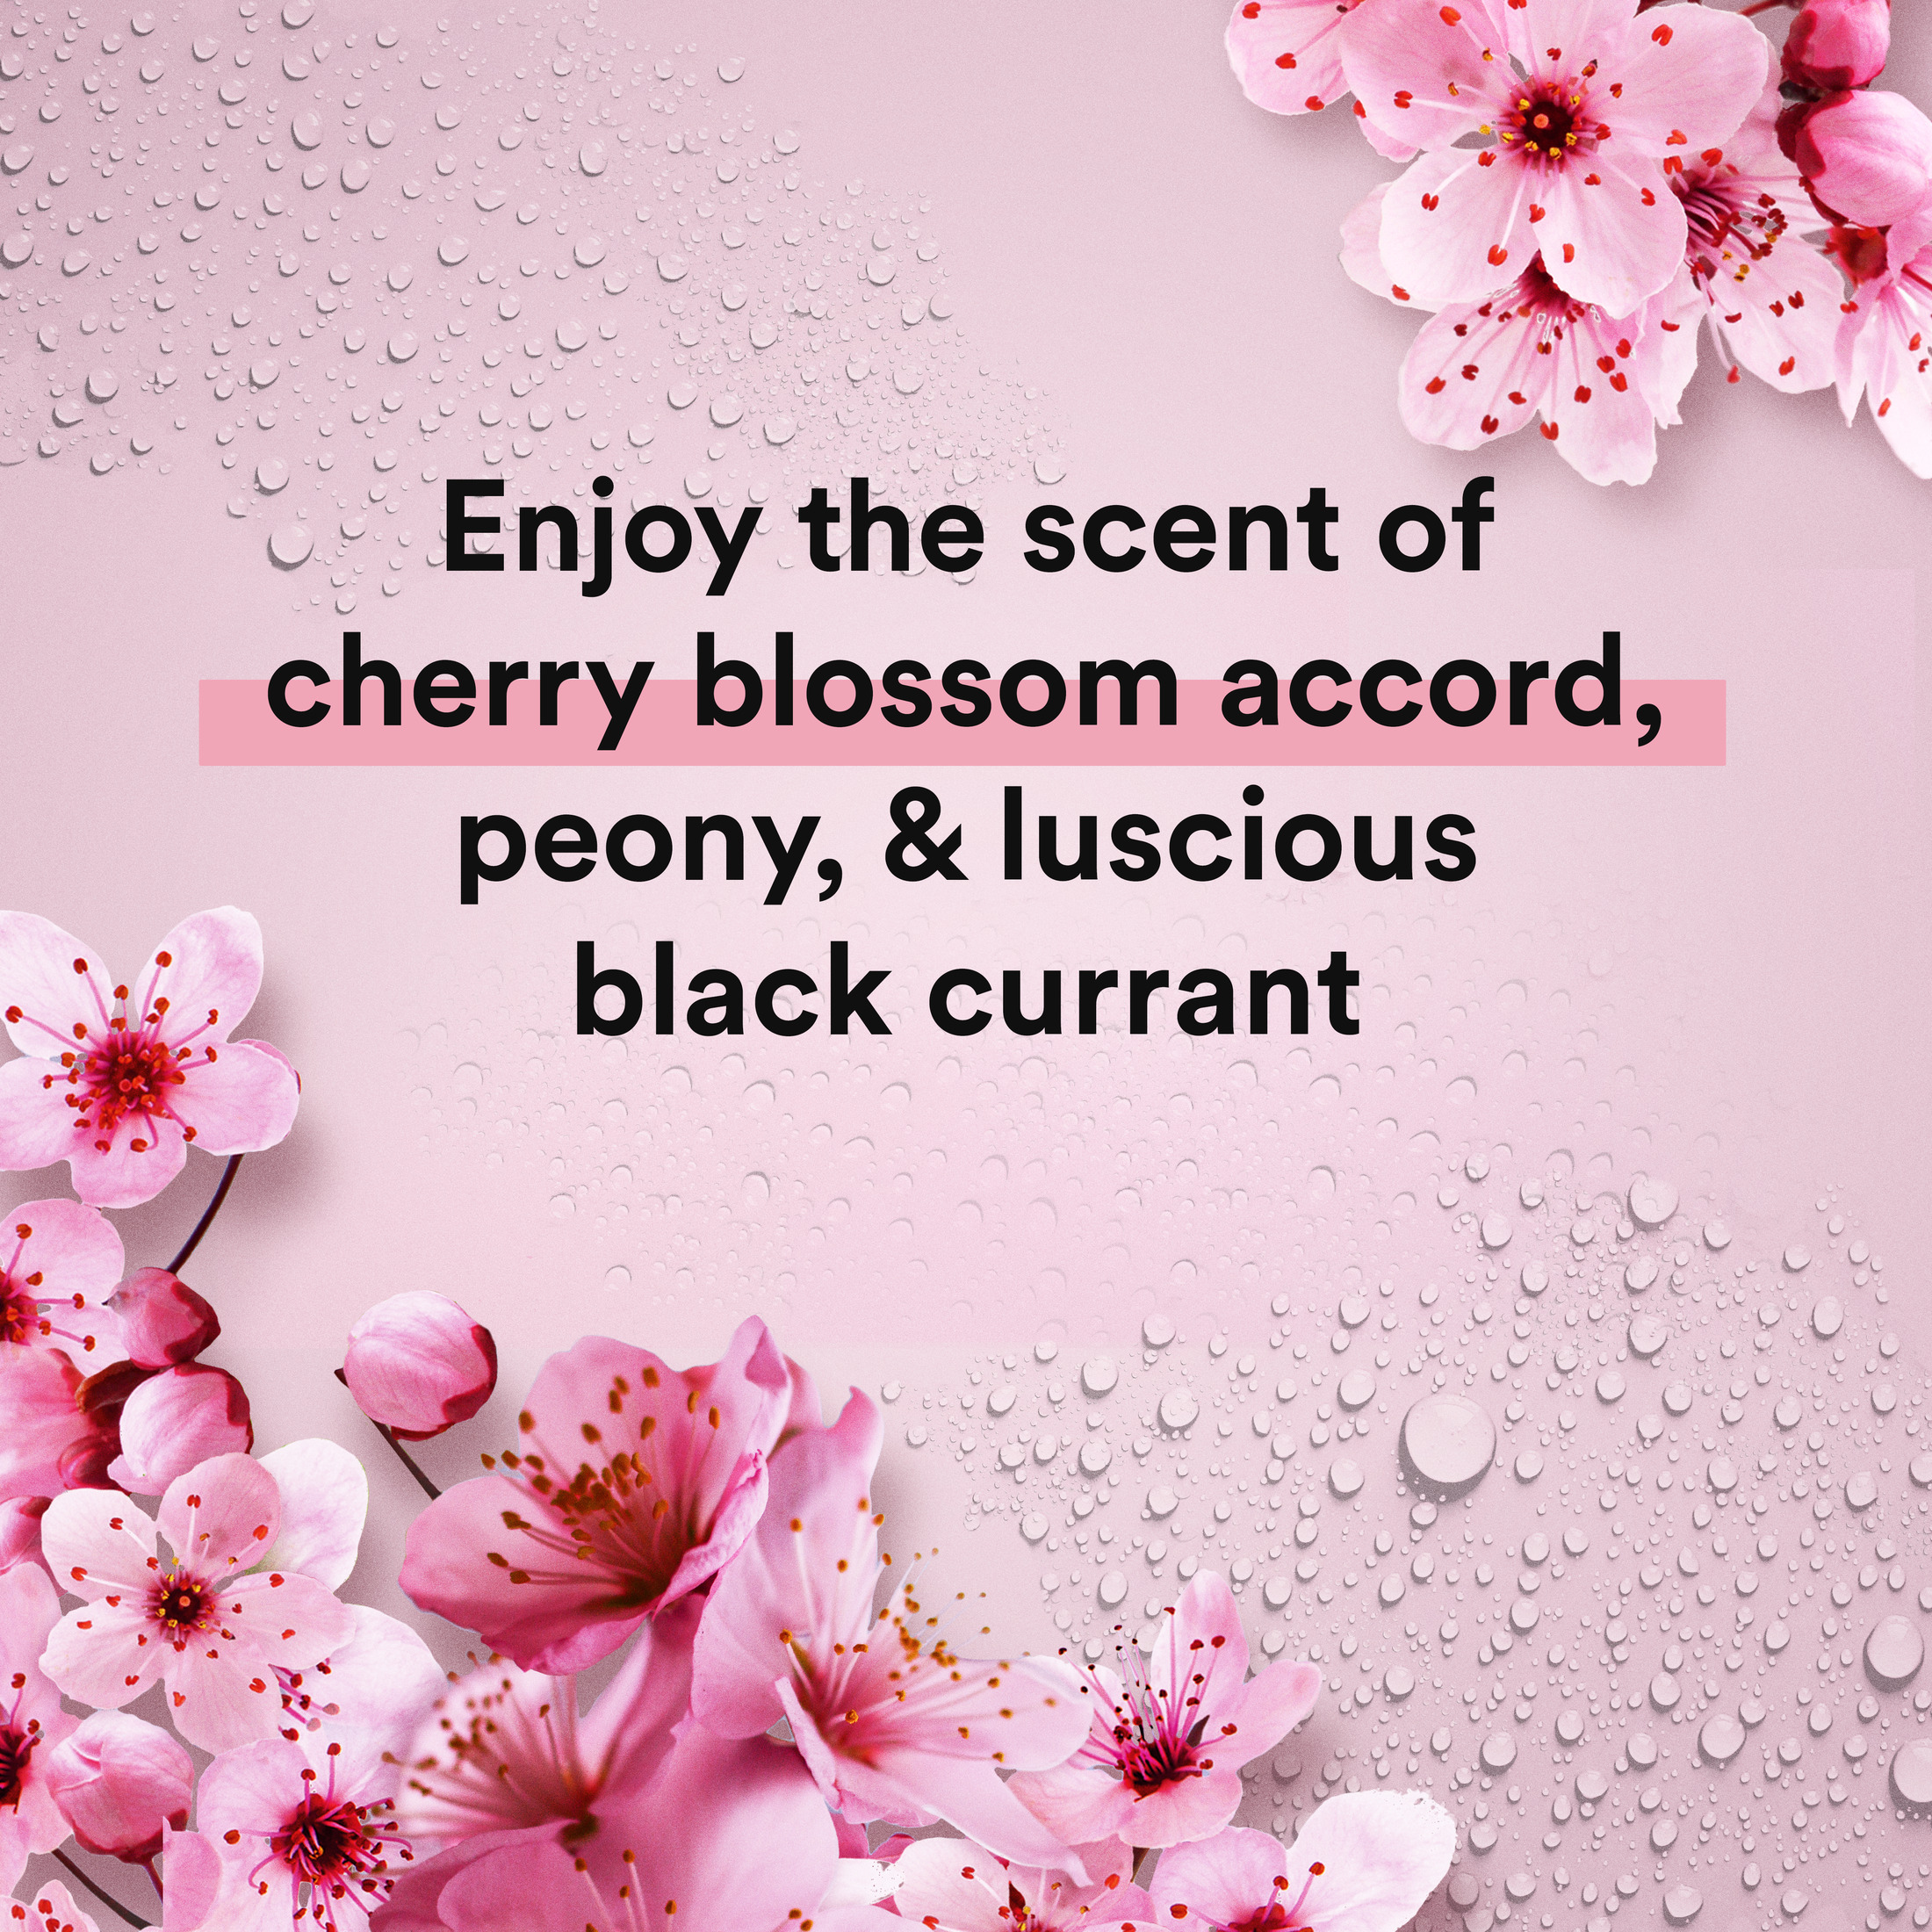 Suave Essentials Softening Shampoo, Wild Cherry Blossom, 22.5 fl oz - image 5 of 10